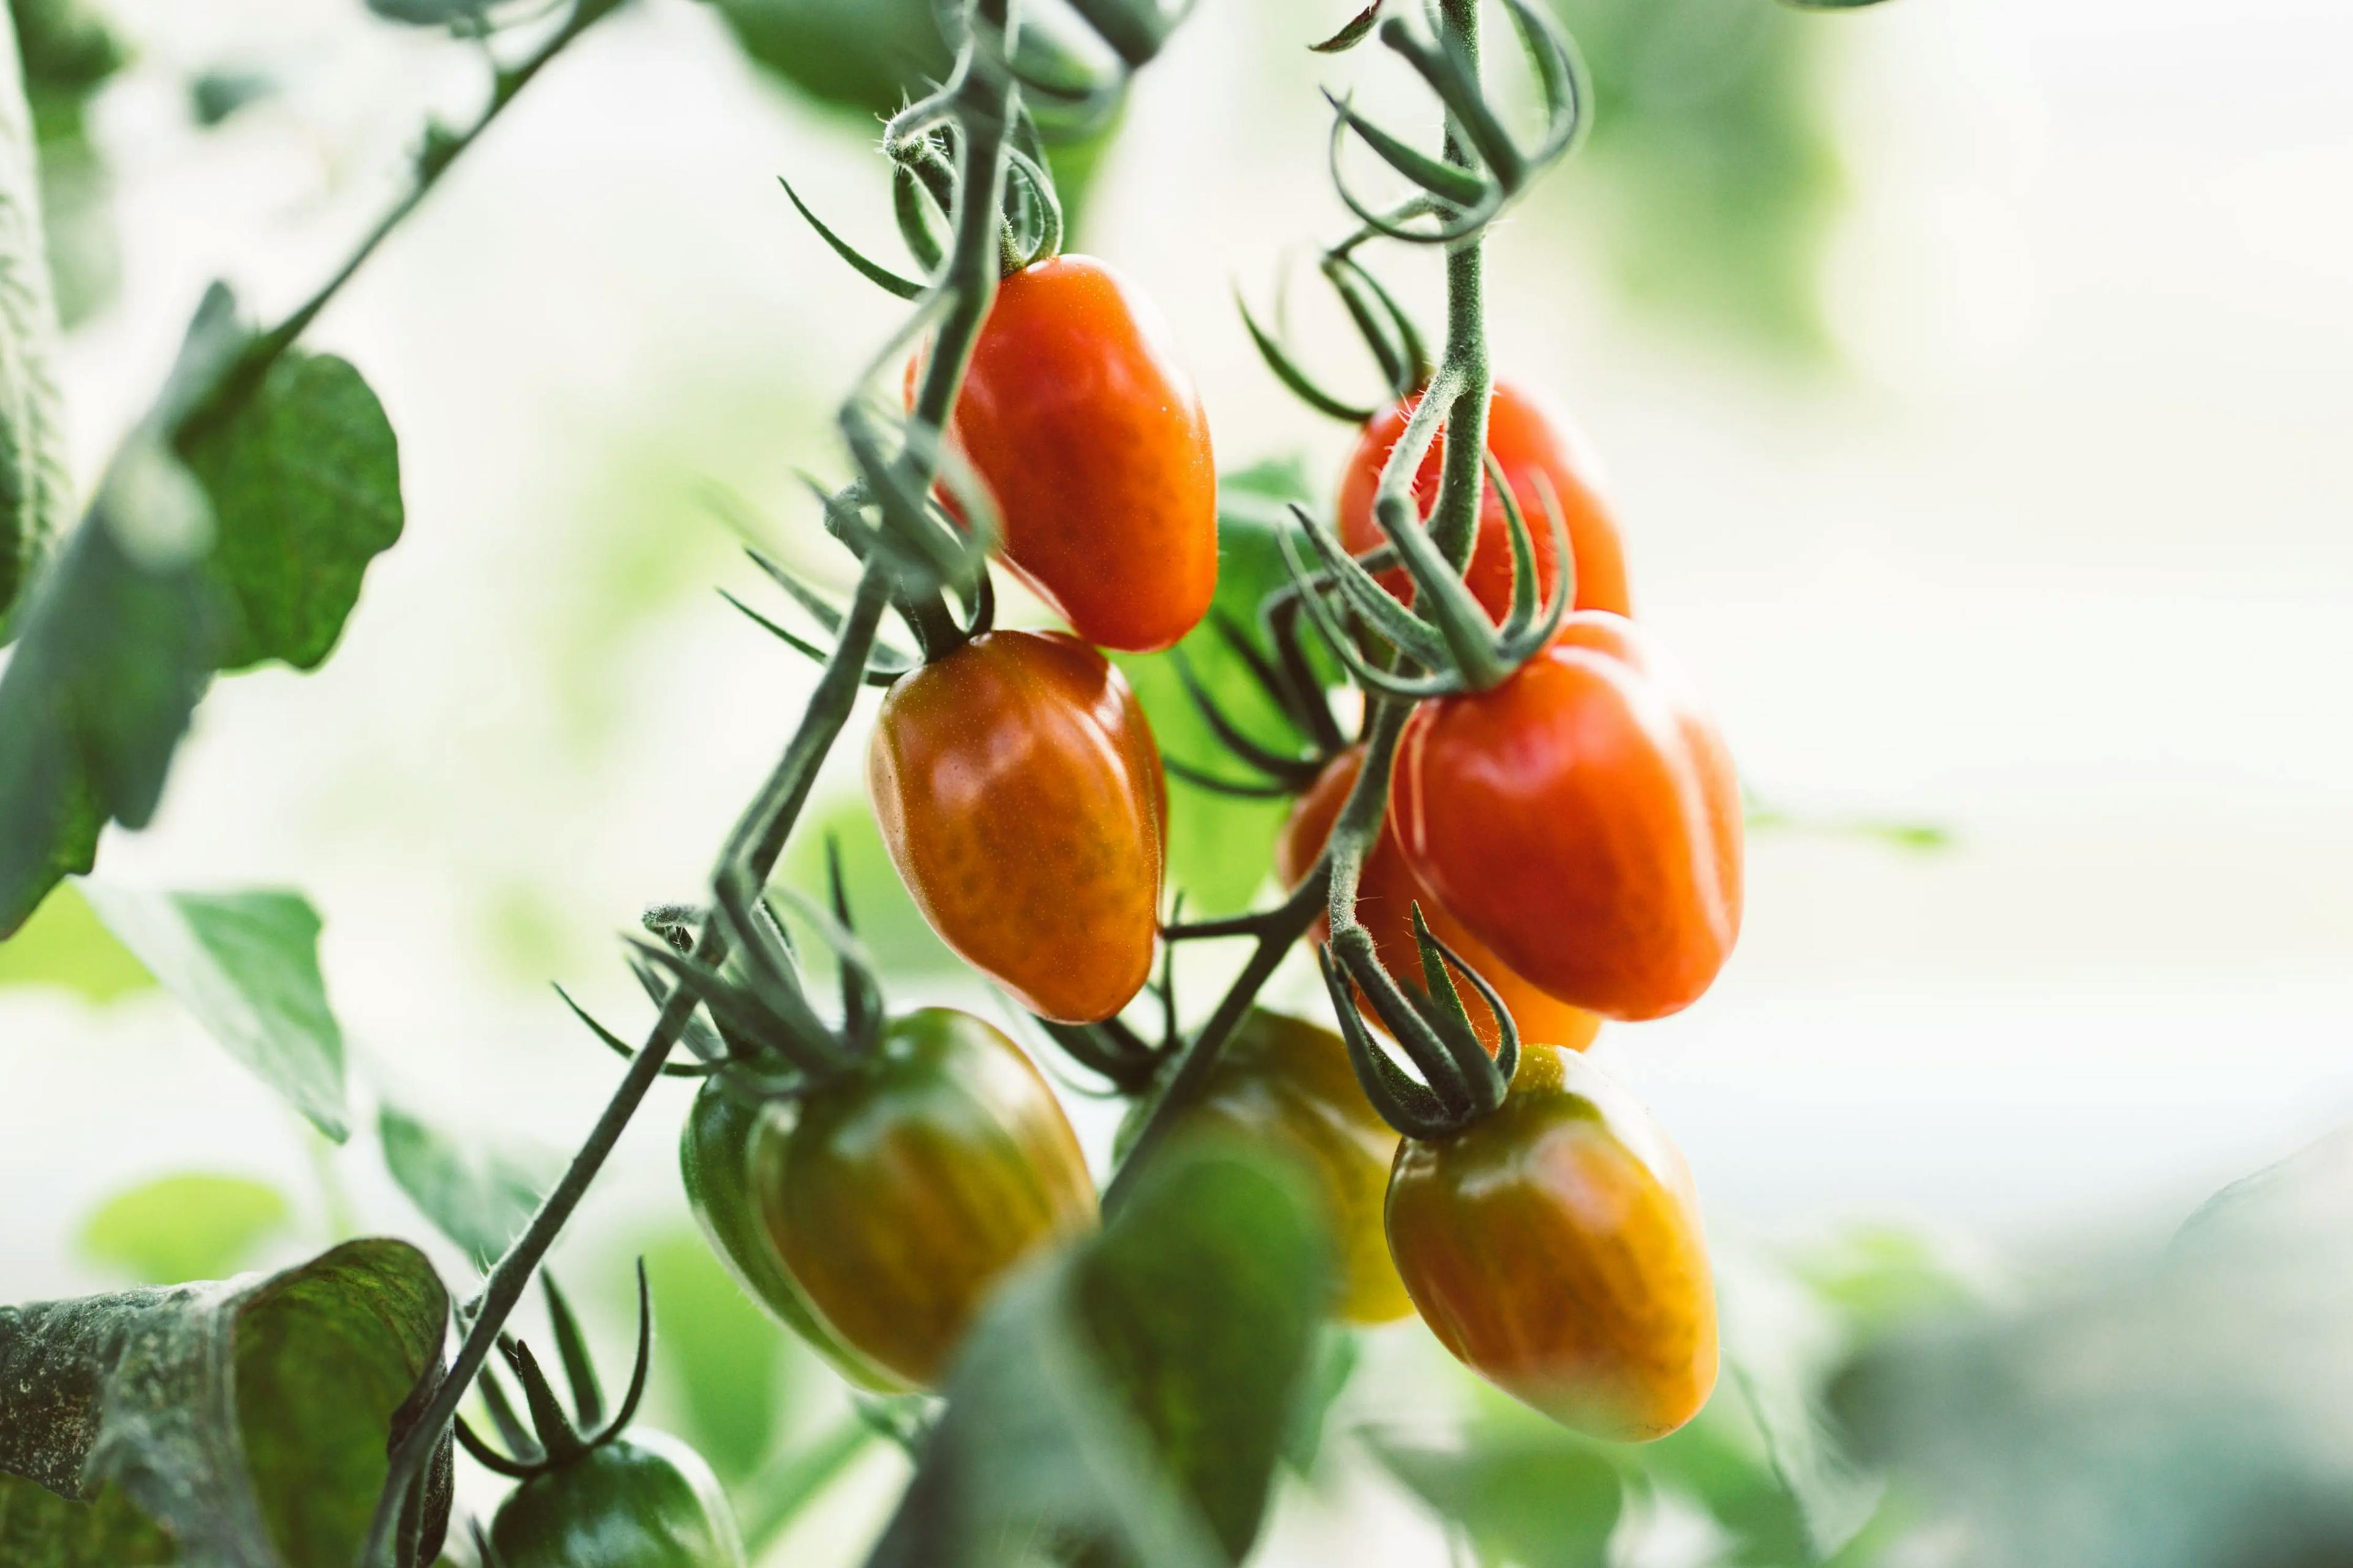 Tomat, agurk og salat - månedens smak i juli